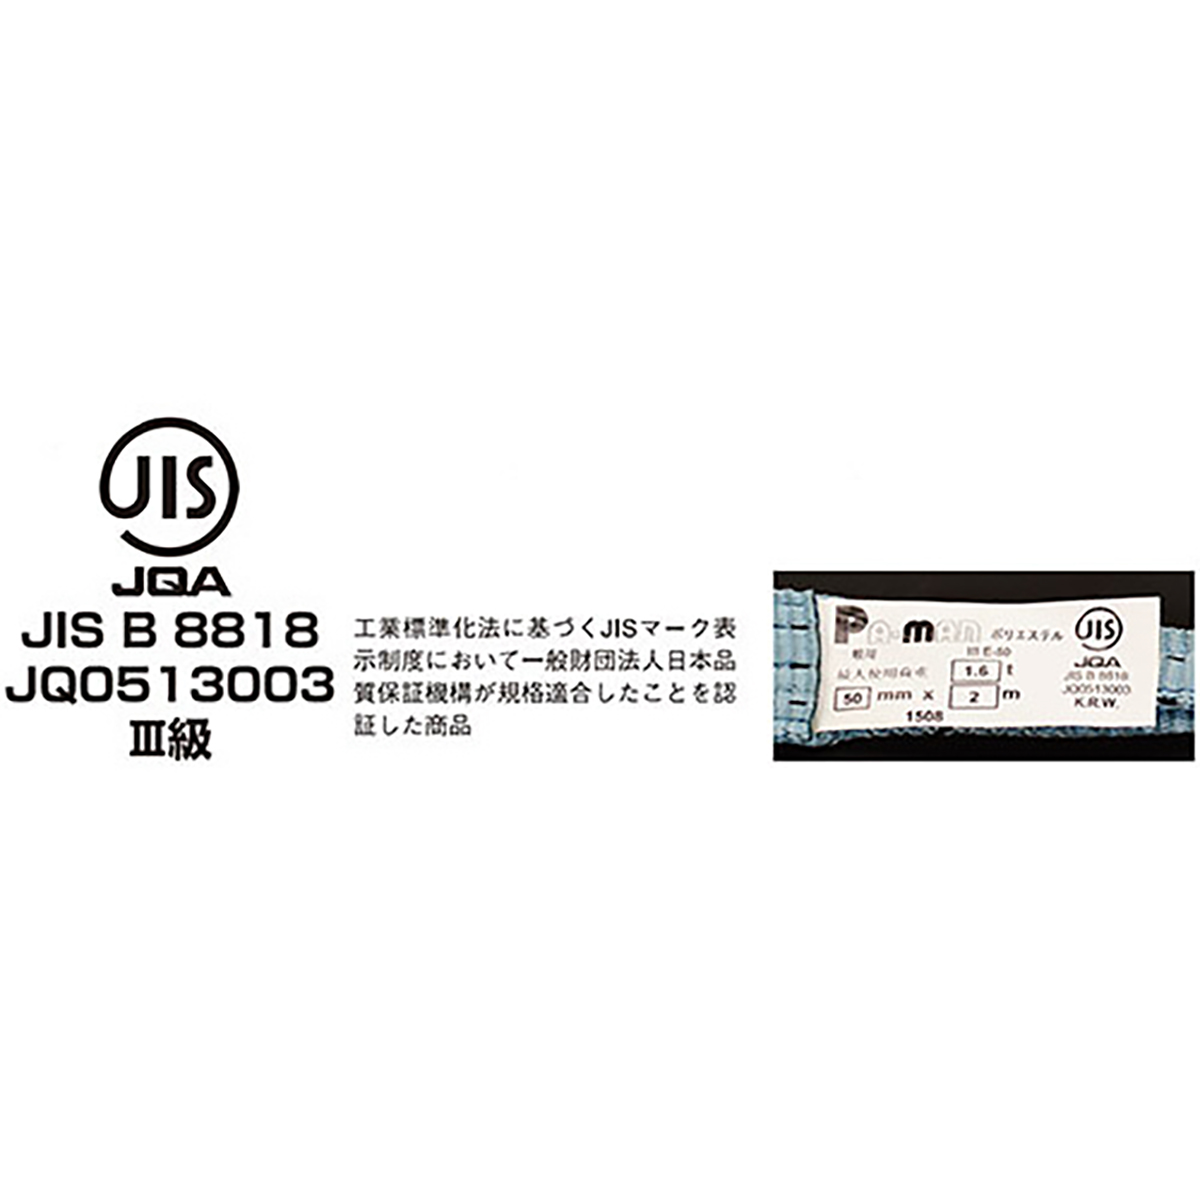 ポリベルトスリング JIS III級 ソフト面付 巾25mm 2.5m 1本